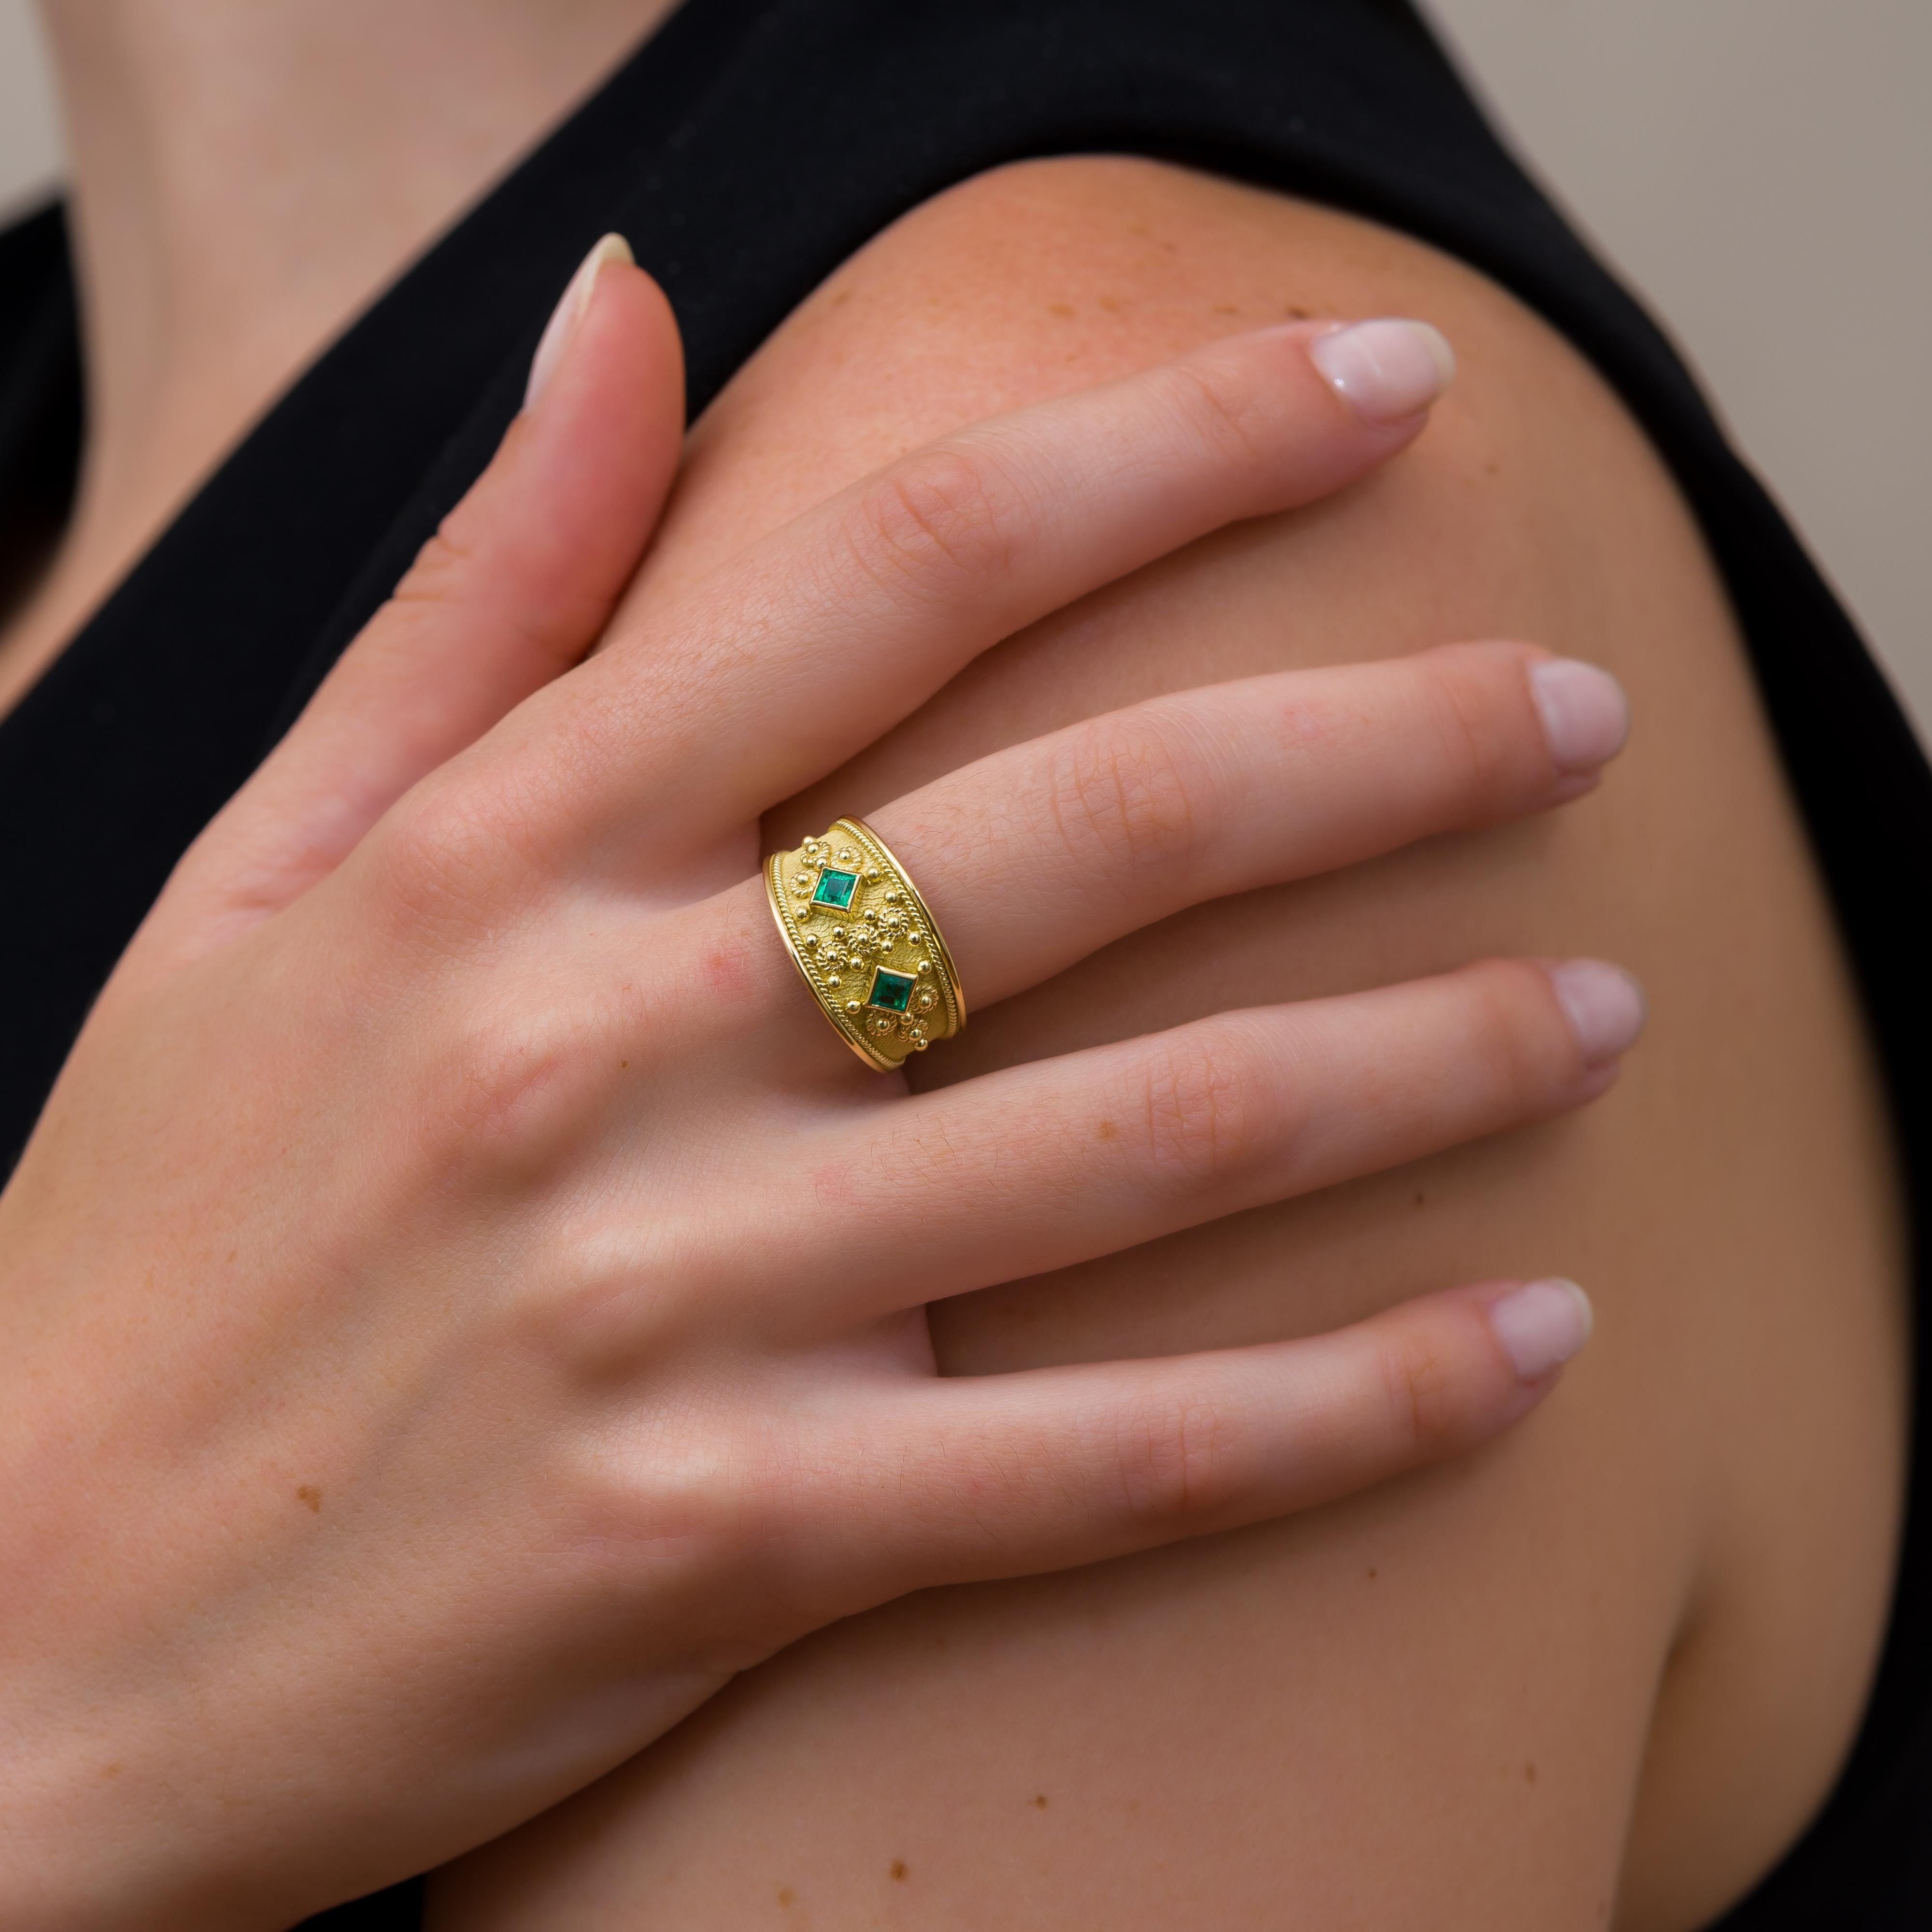 Dieser faszinierende Ring ist mit zwei quadratischen Smaragden besetzt, die von einem verschlungenen Goldseil umhüllt und mit Granulationen verziert sind - ein Meisterwerk von zeitloser Raffinesse und sorgfältiger Handwerkskunst.

100% handgefertigt